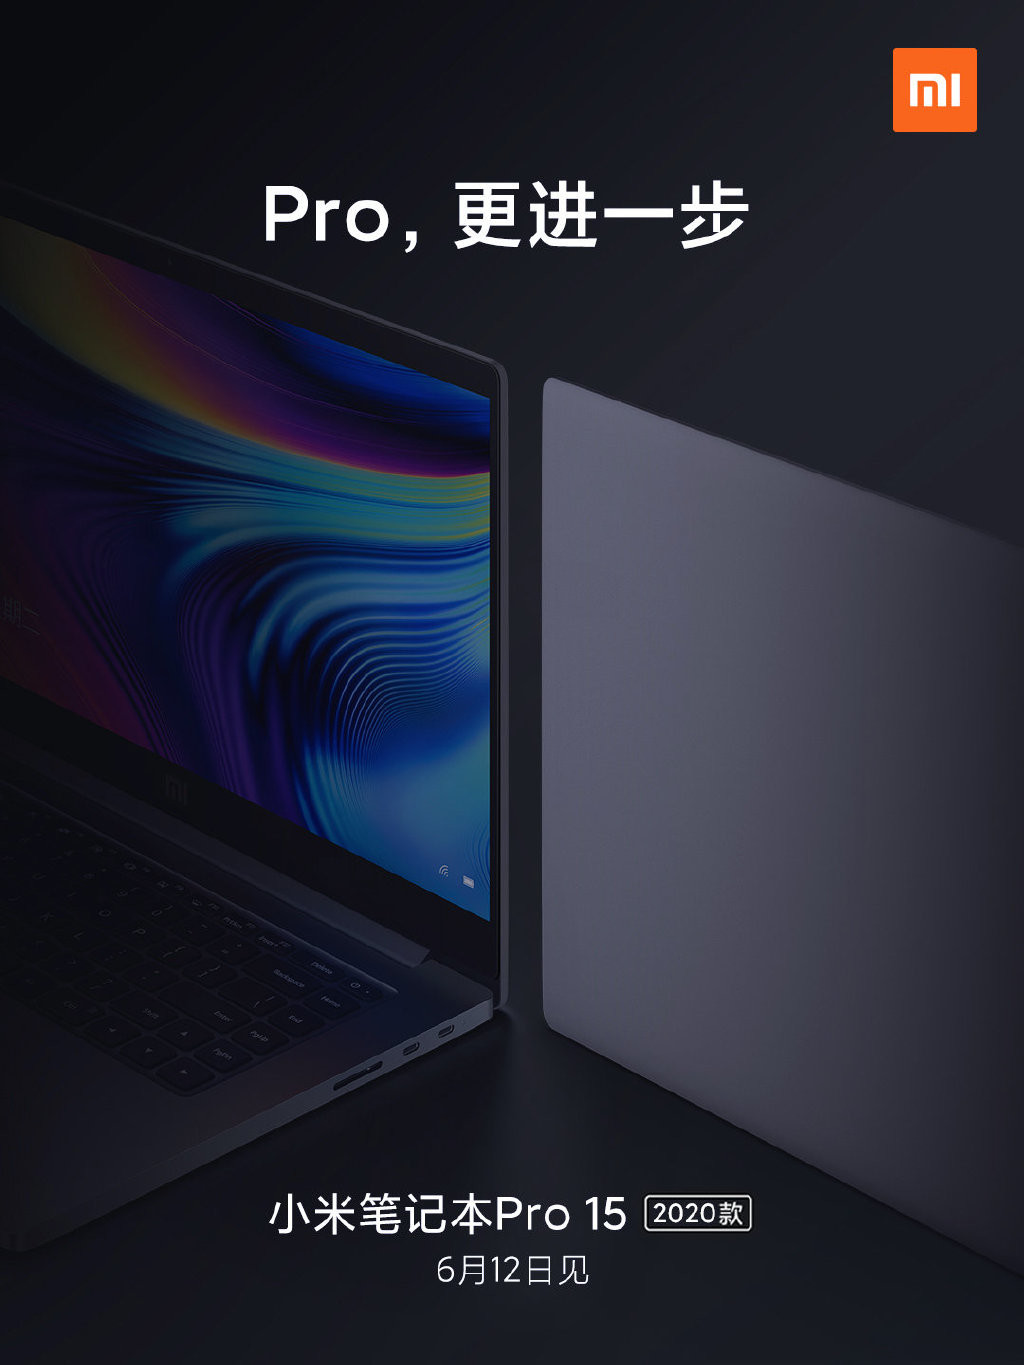 小米米笔记本Pro 15 2020将于6月12日在中国推出